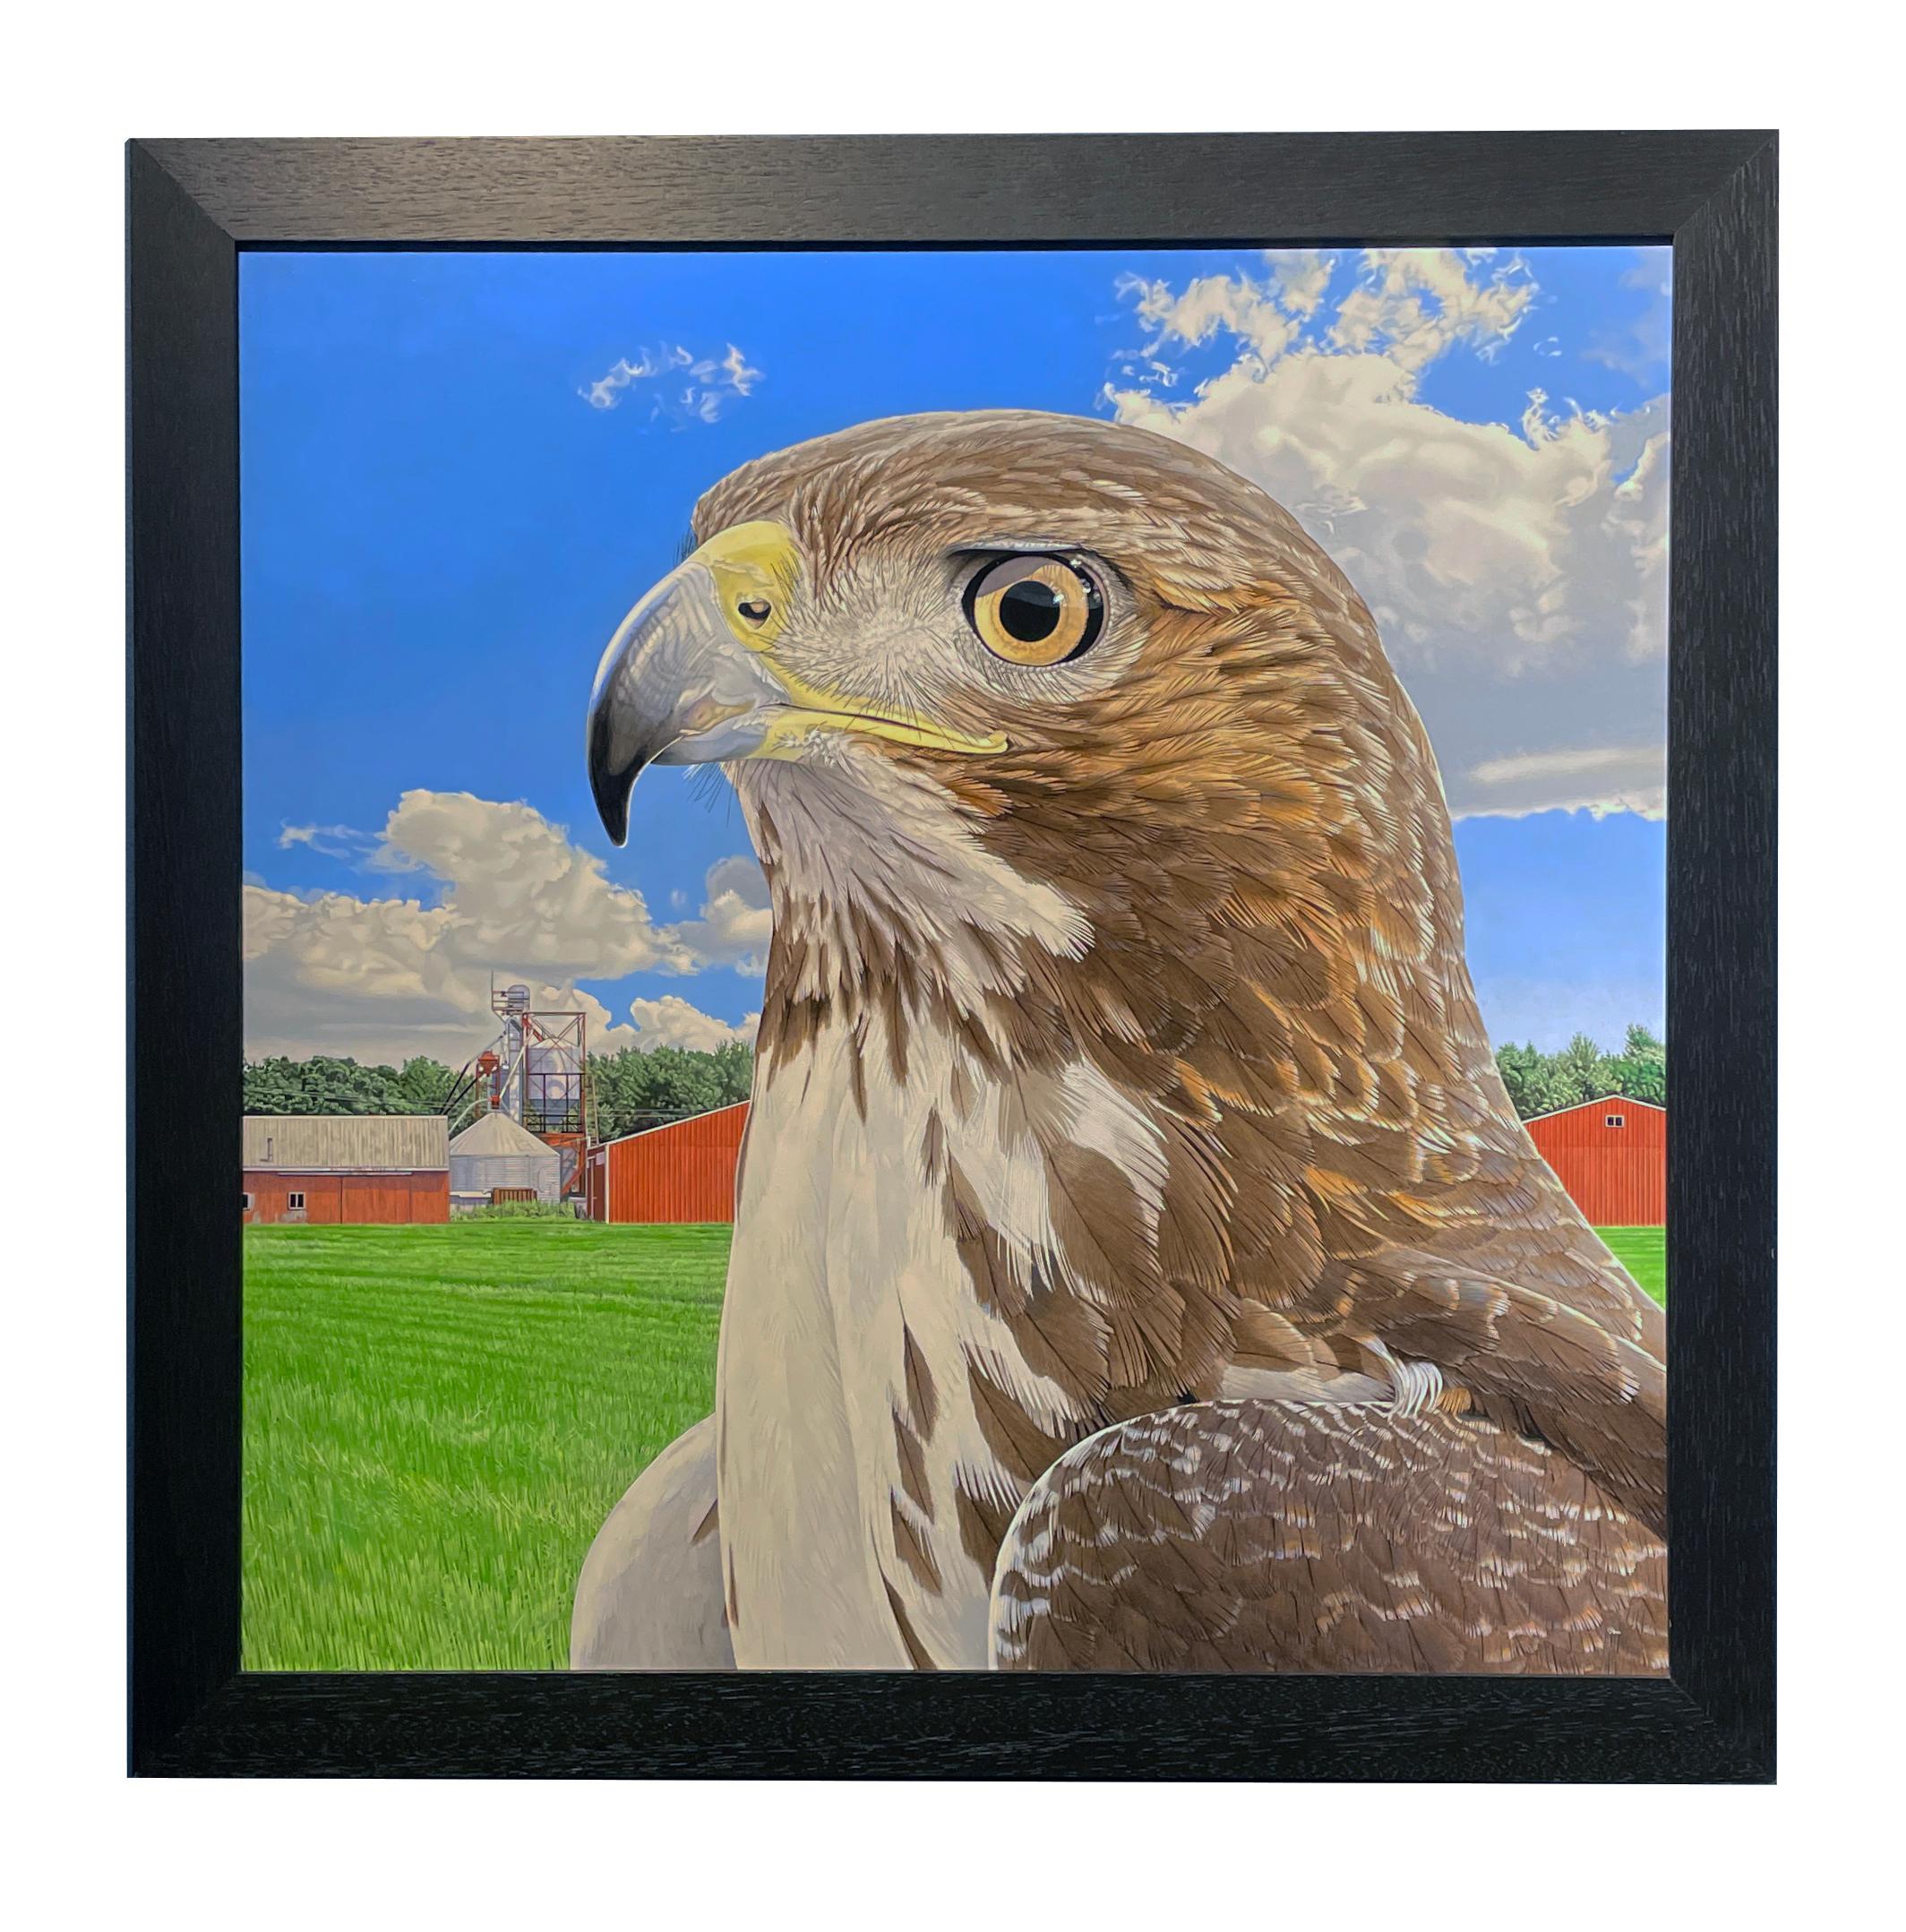 Nelson's Redtail - Photorealistic Portrait of a Hawk, Farm Landscape Backdrop 2